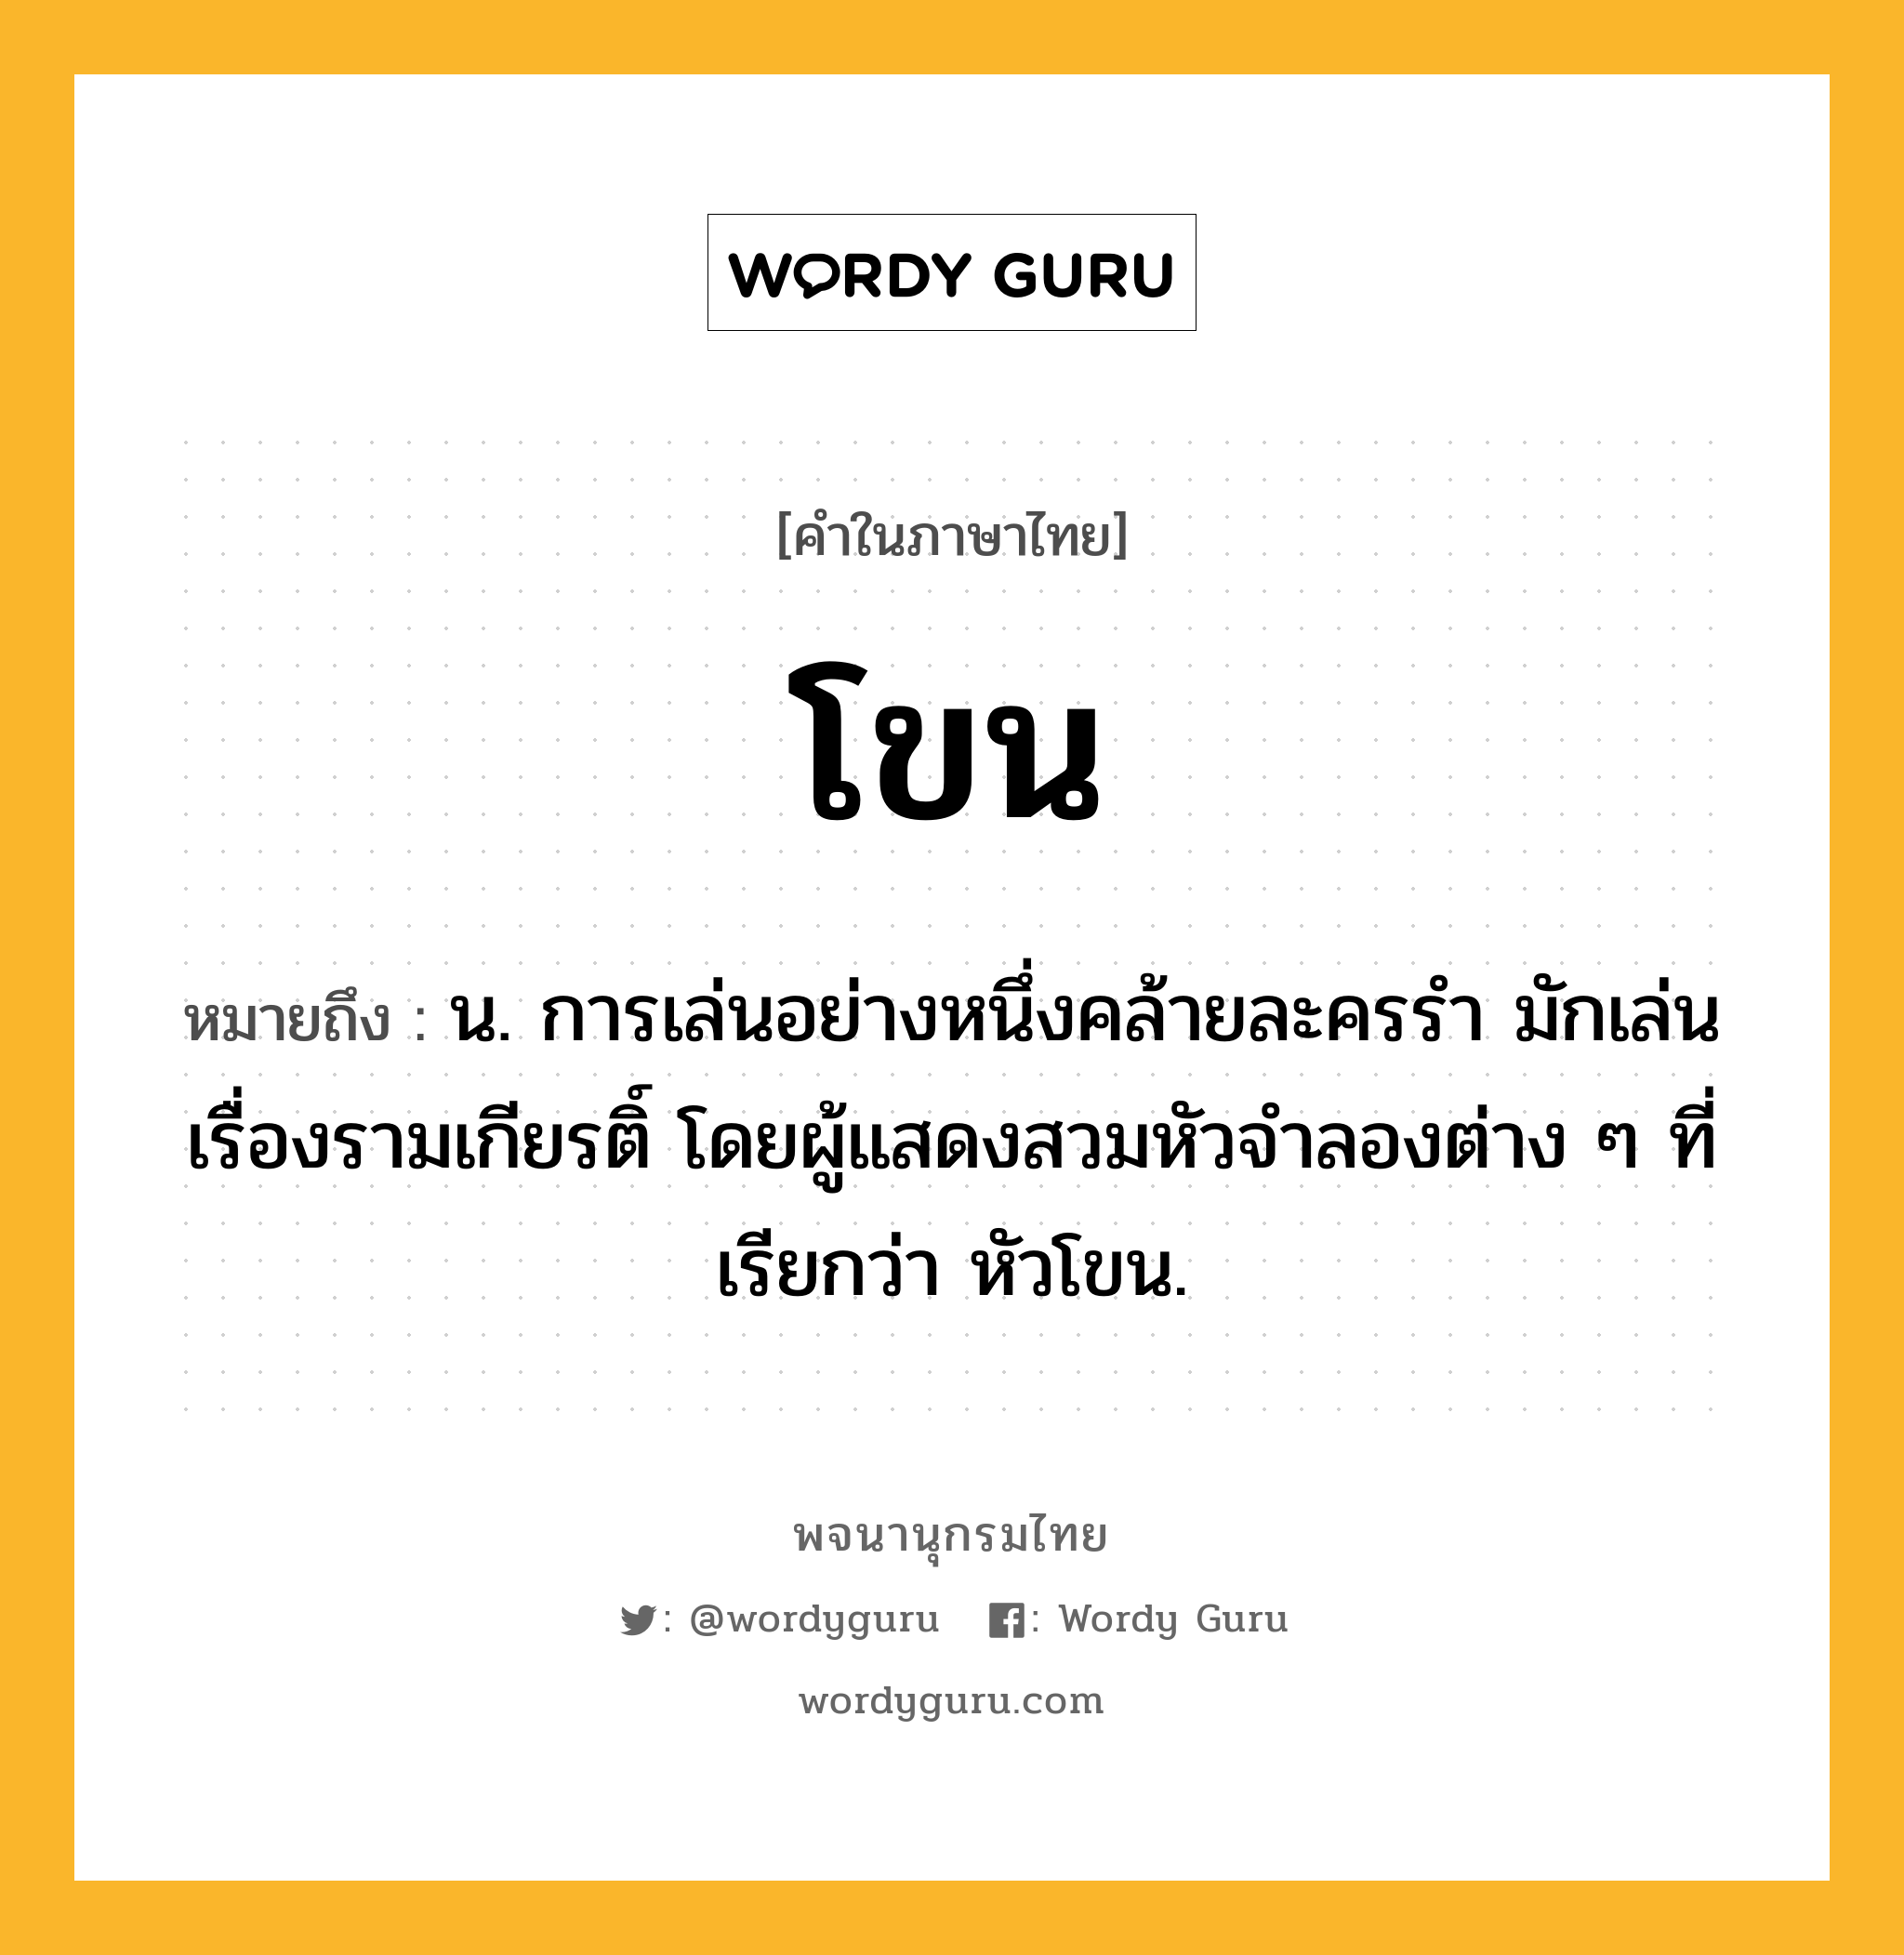 โขน หมายถึงอะไร?, คำในภาษาไทย โขน หมายถึง น. การเล่นอย่างหนึ่งคล้ายละครรํา มักเล่นเรื่องรามเกียรติ์ โดยผู้แสดงสวมหัวจําลองต่าง ๆ ที่เรียกว่า หัวโขน.